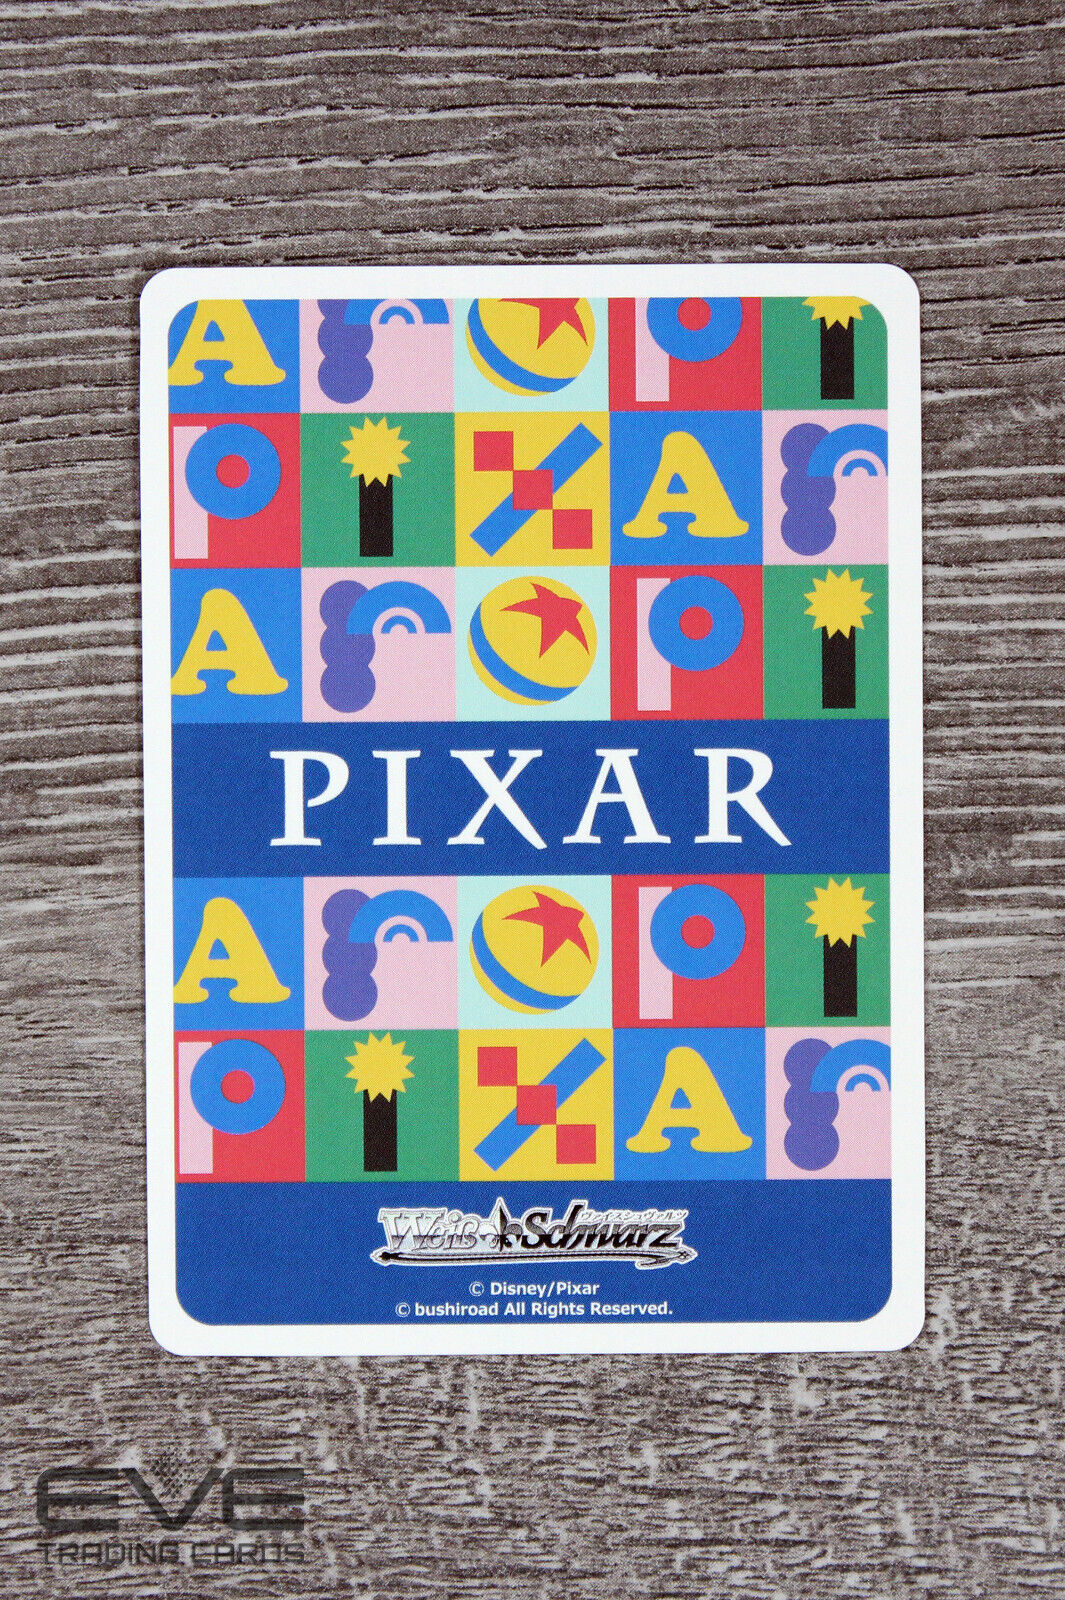 Weiss Schwarz Japan Pixar PXR/S94-106 PR "Adventure Beyond Imagination" NM/M